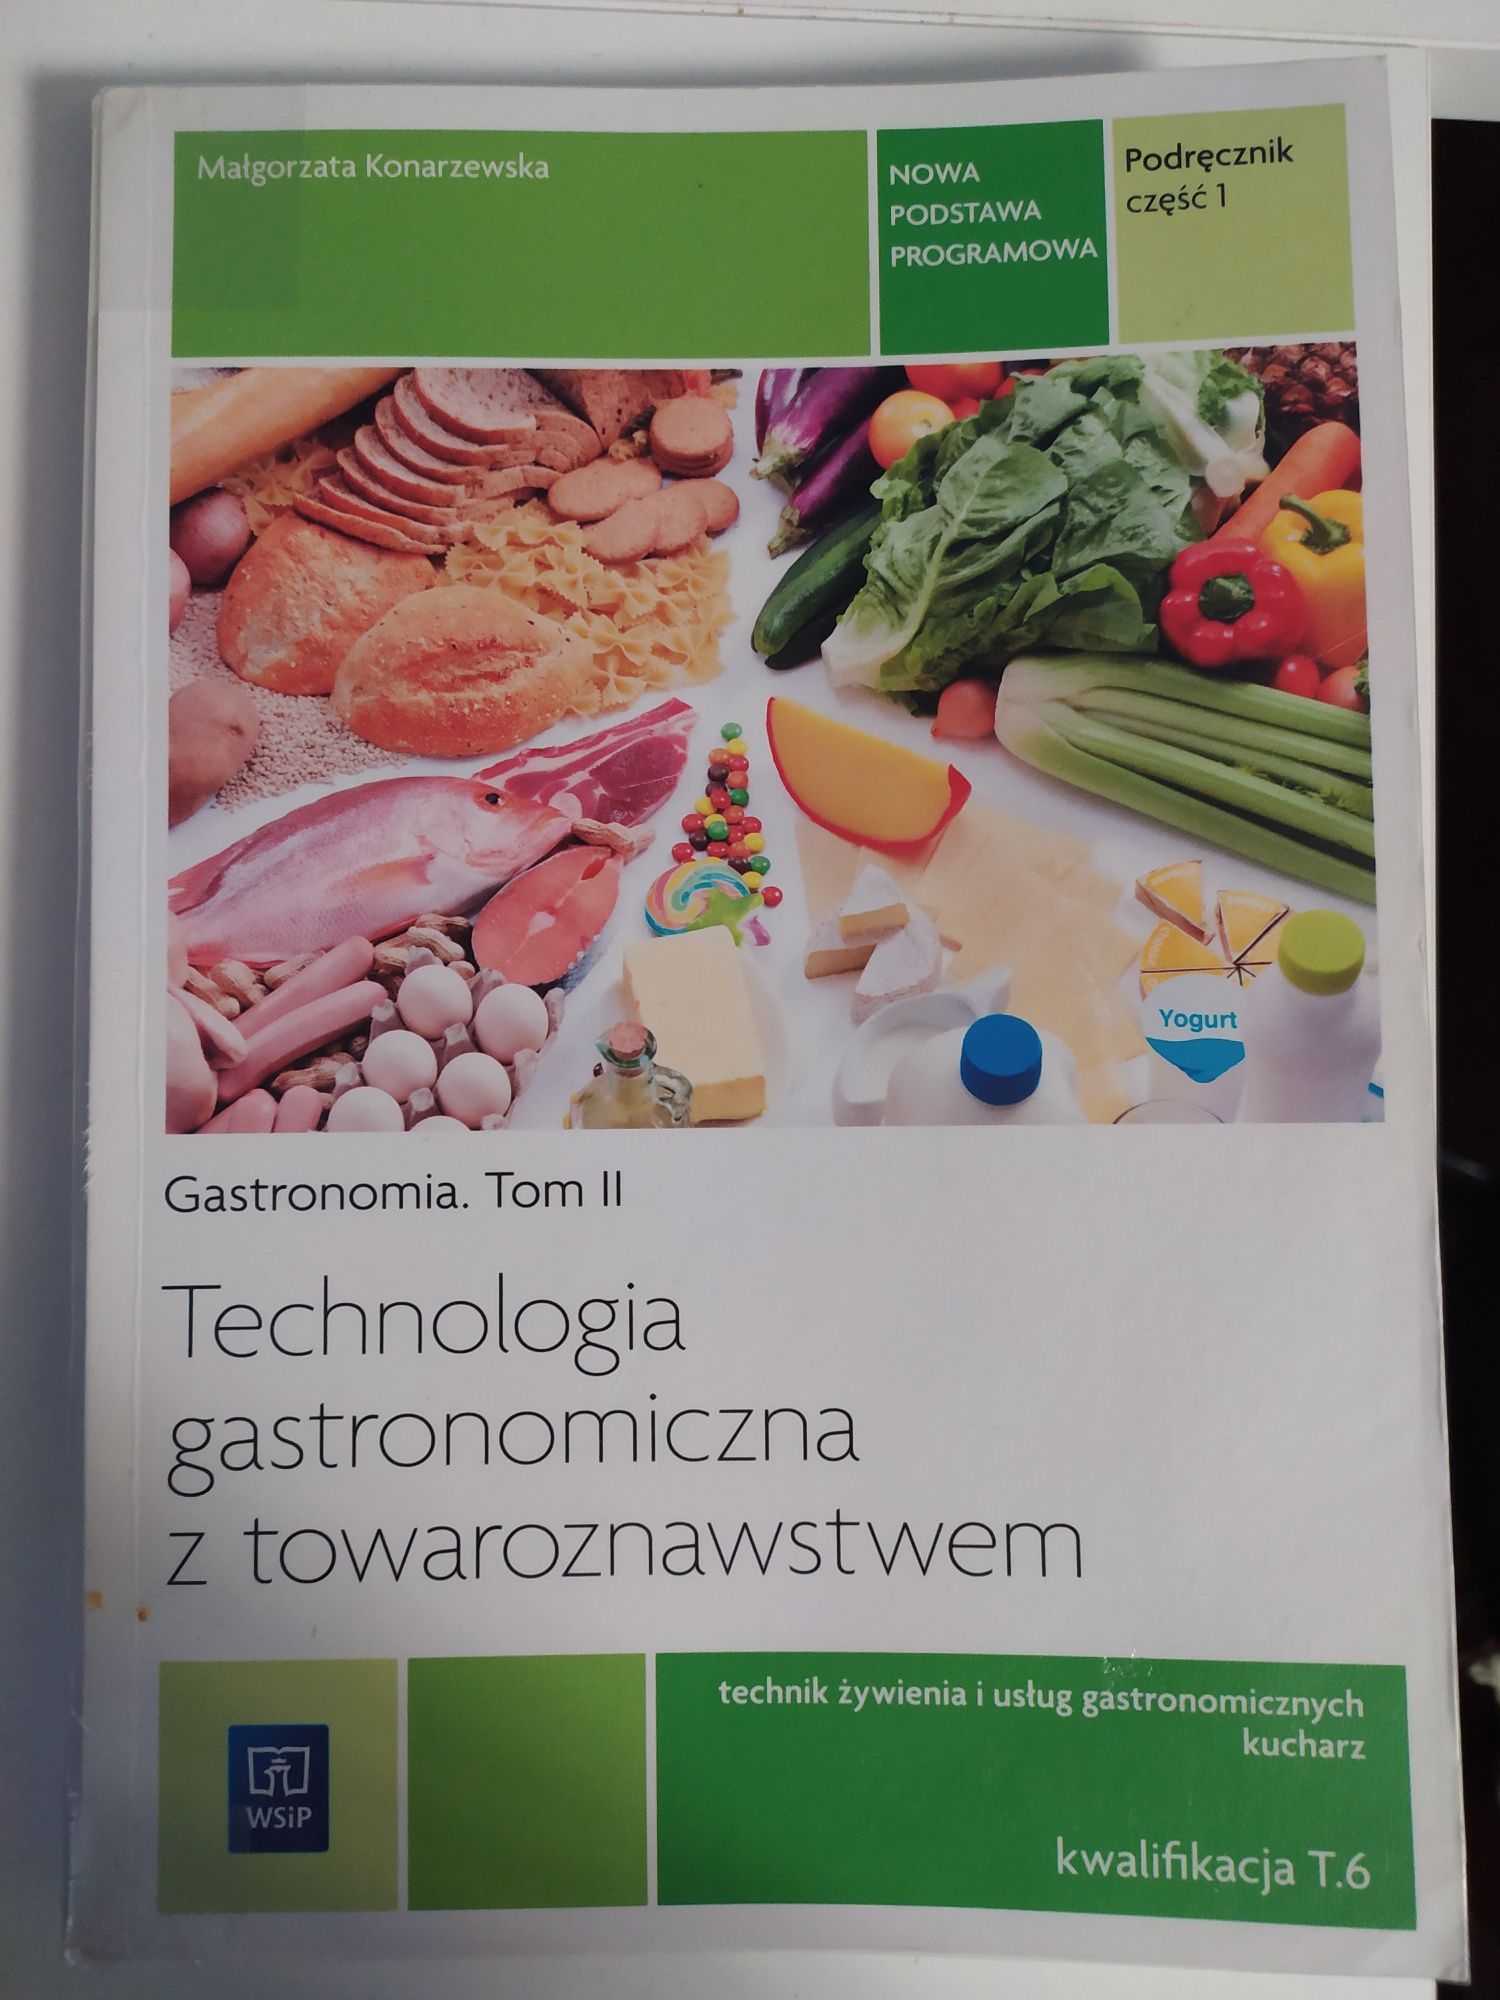 Technologia gastronomiczna z towaroznawstwem. Podręcznik cz 1